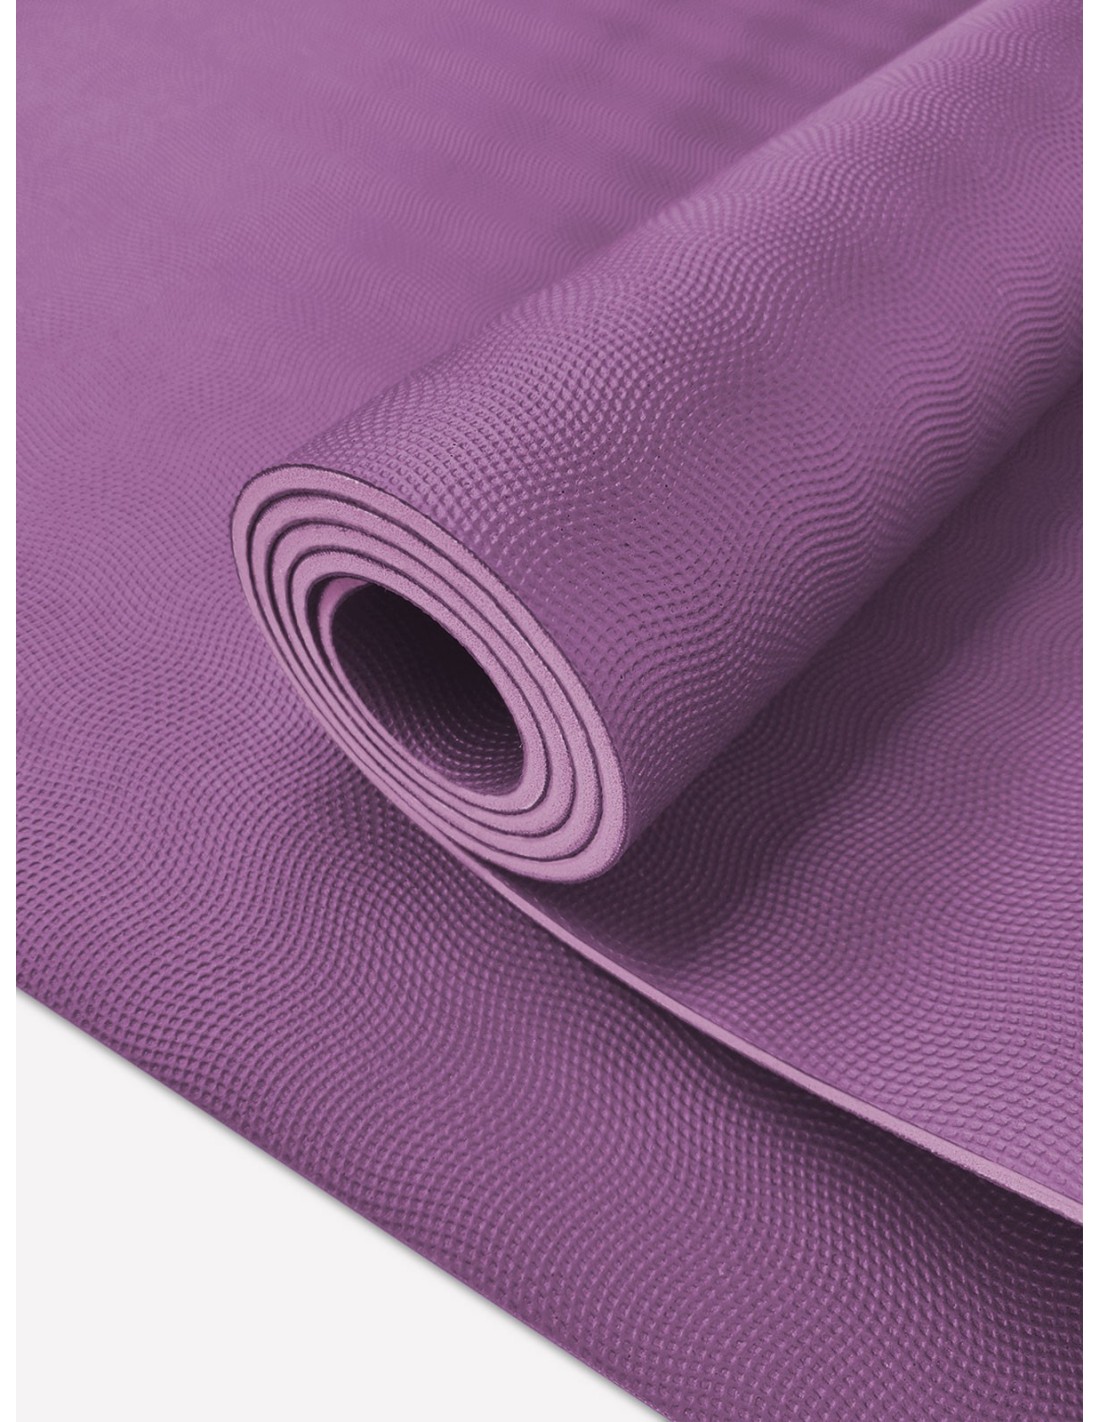 Bolsa esterilla yoga algodon - La Tienda de Yoga - Tienda Online